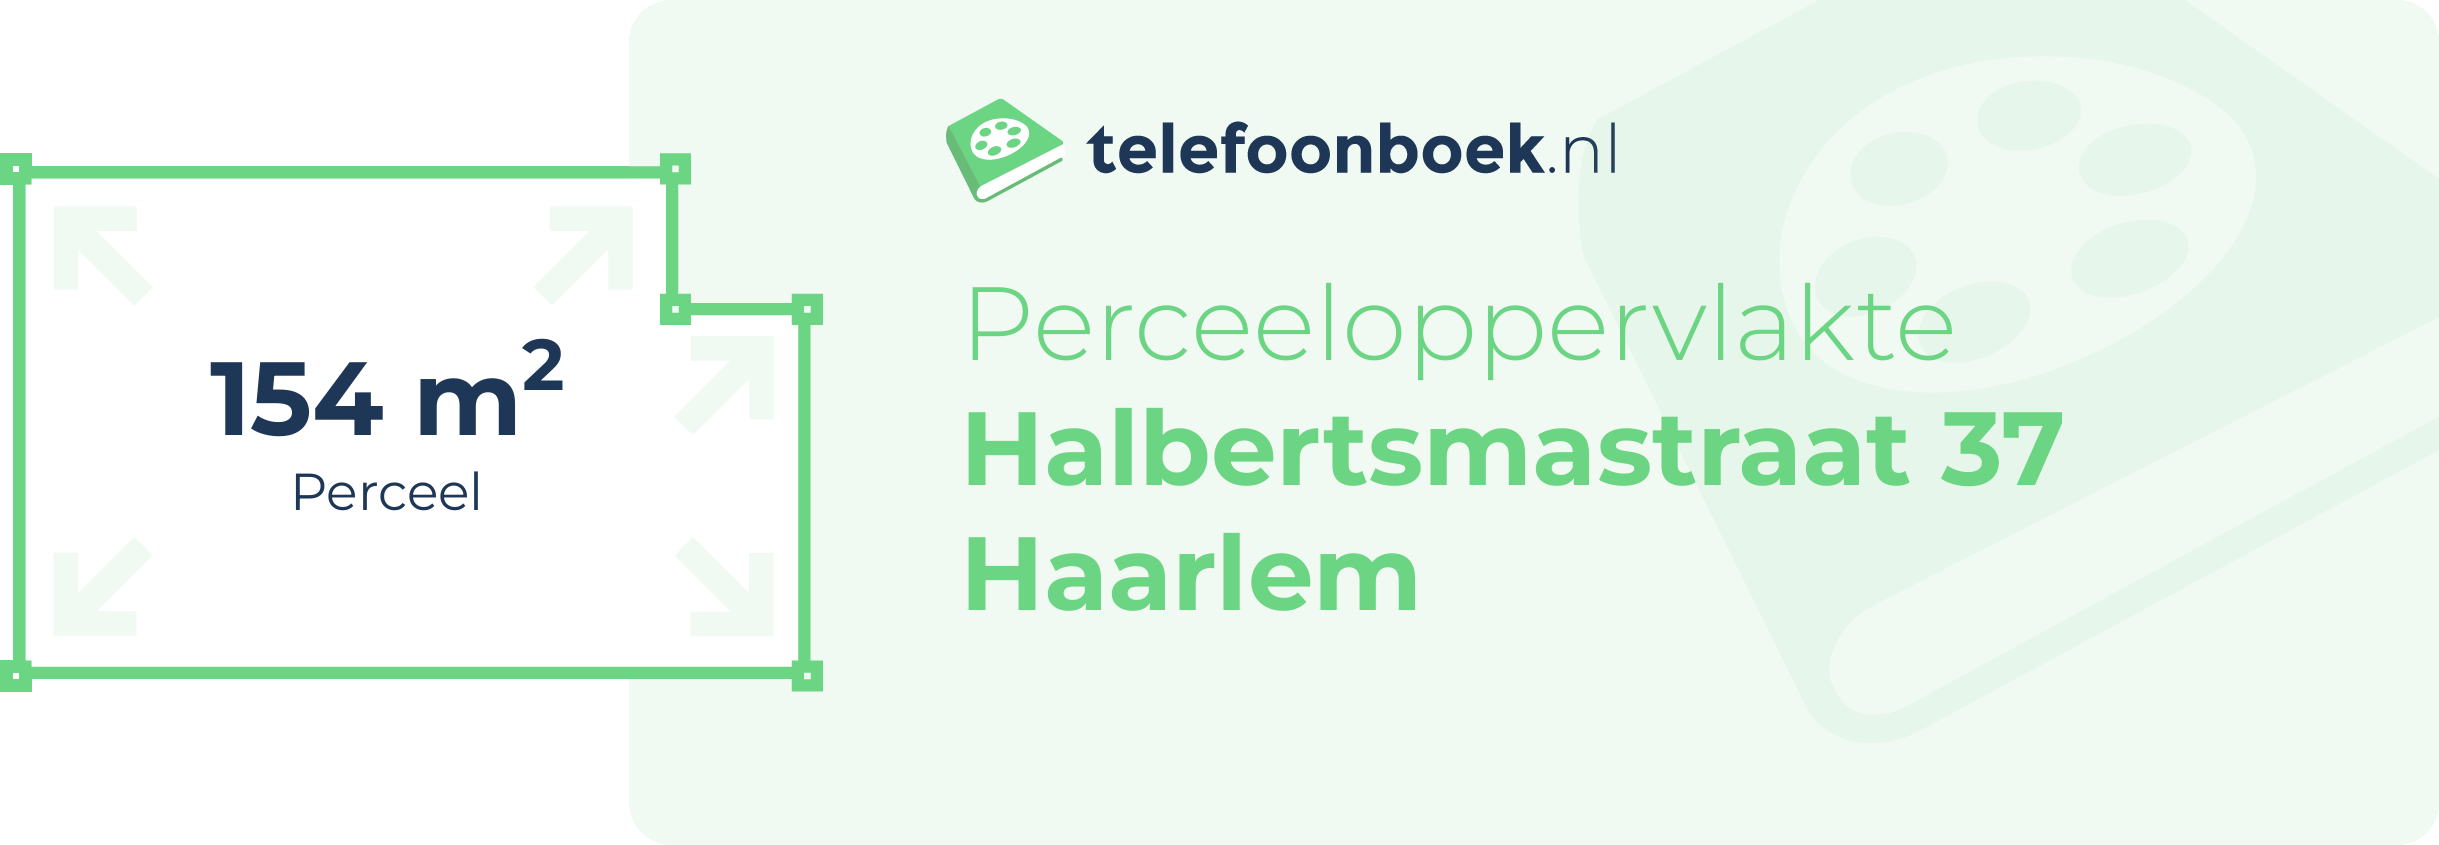 Perceeloppervlakte Halbertsmastraat 37 Haarlem